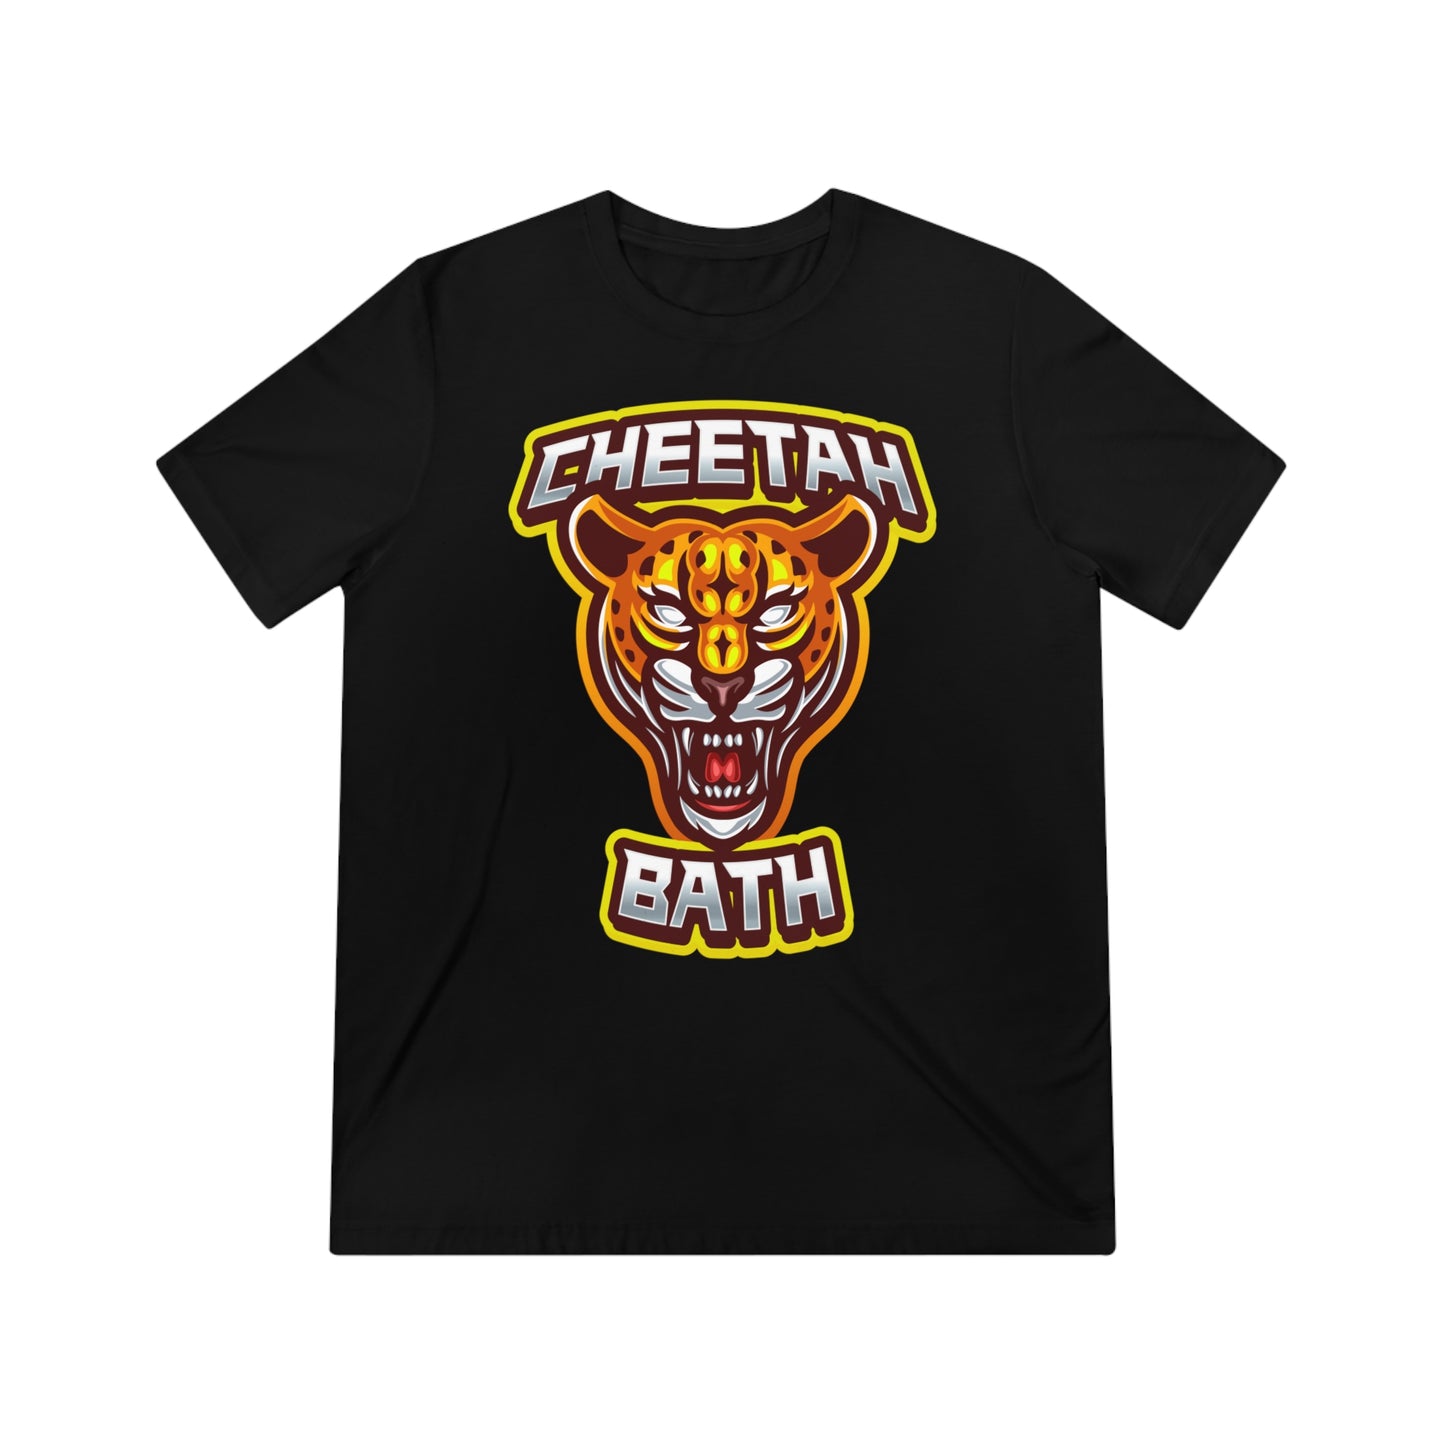 Cheetah Bath - T-Shirt